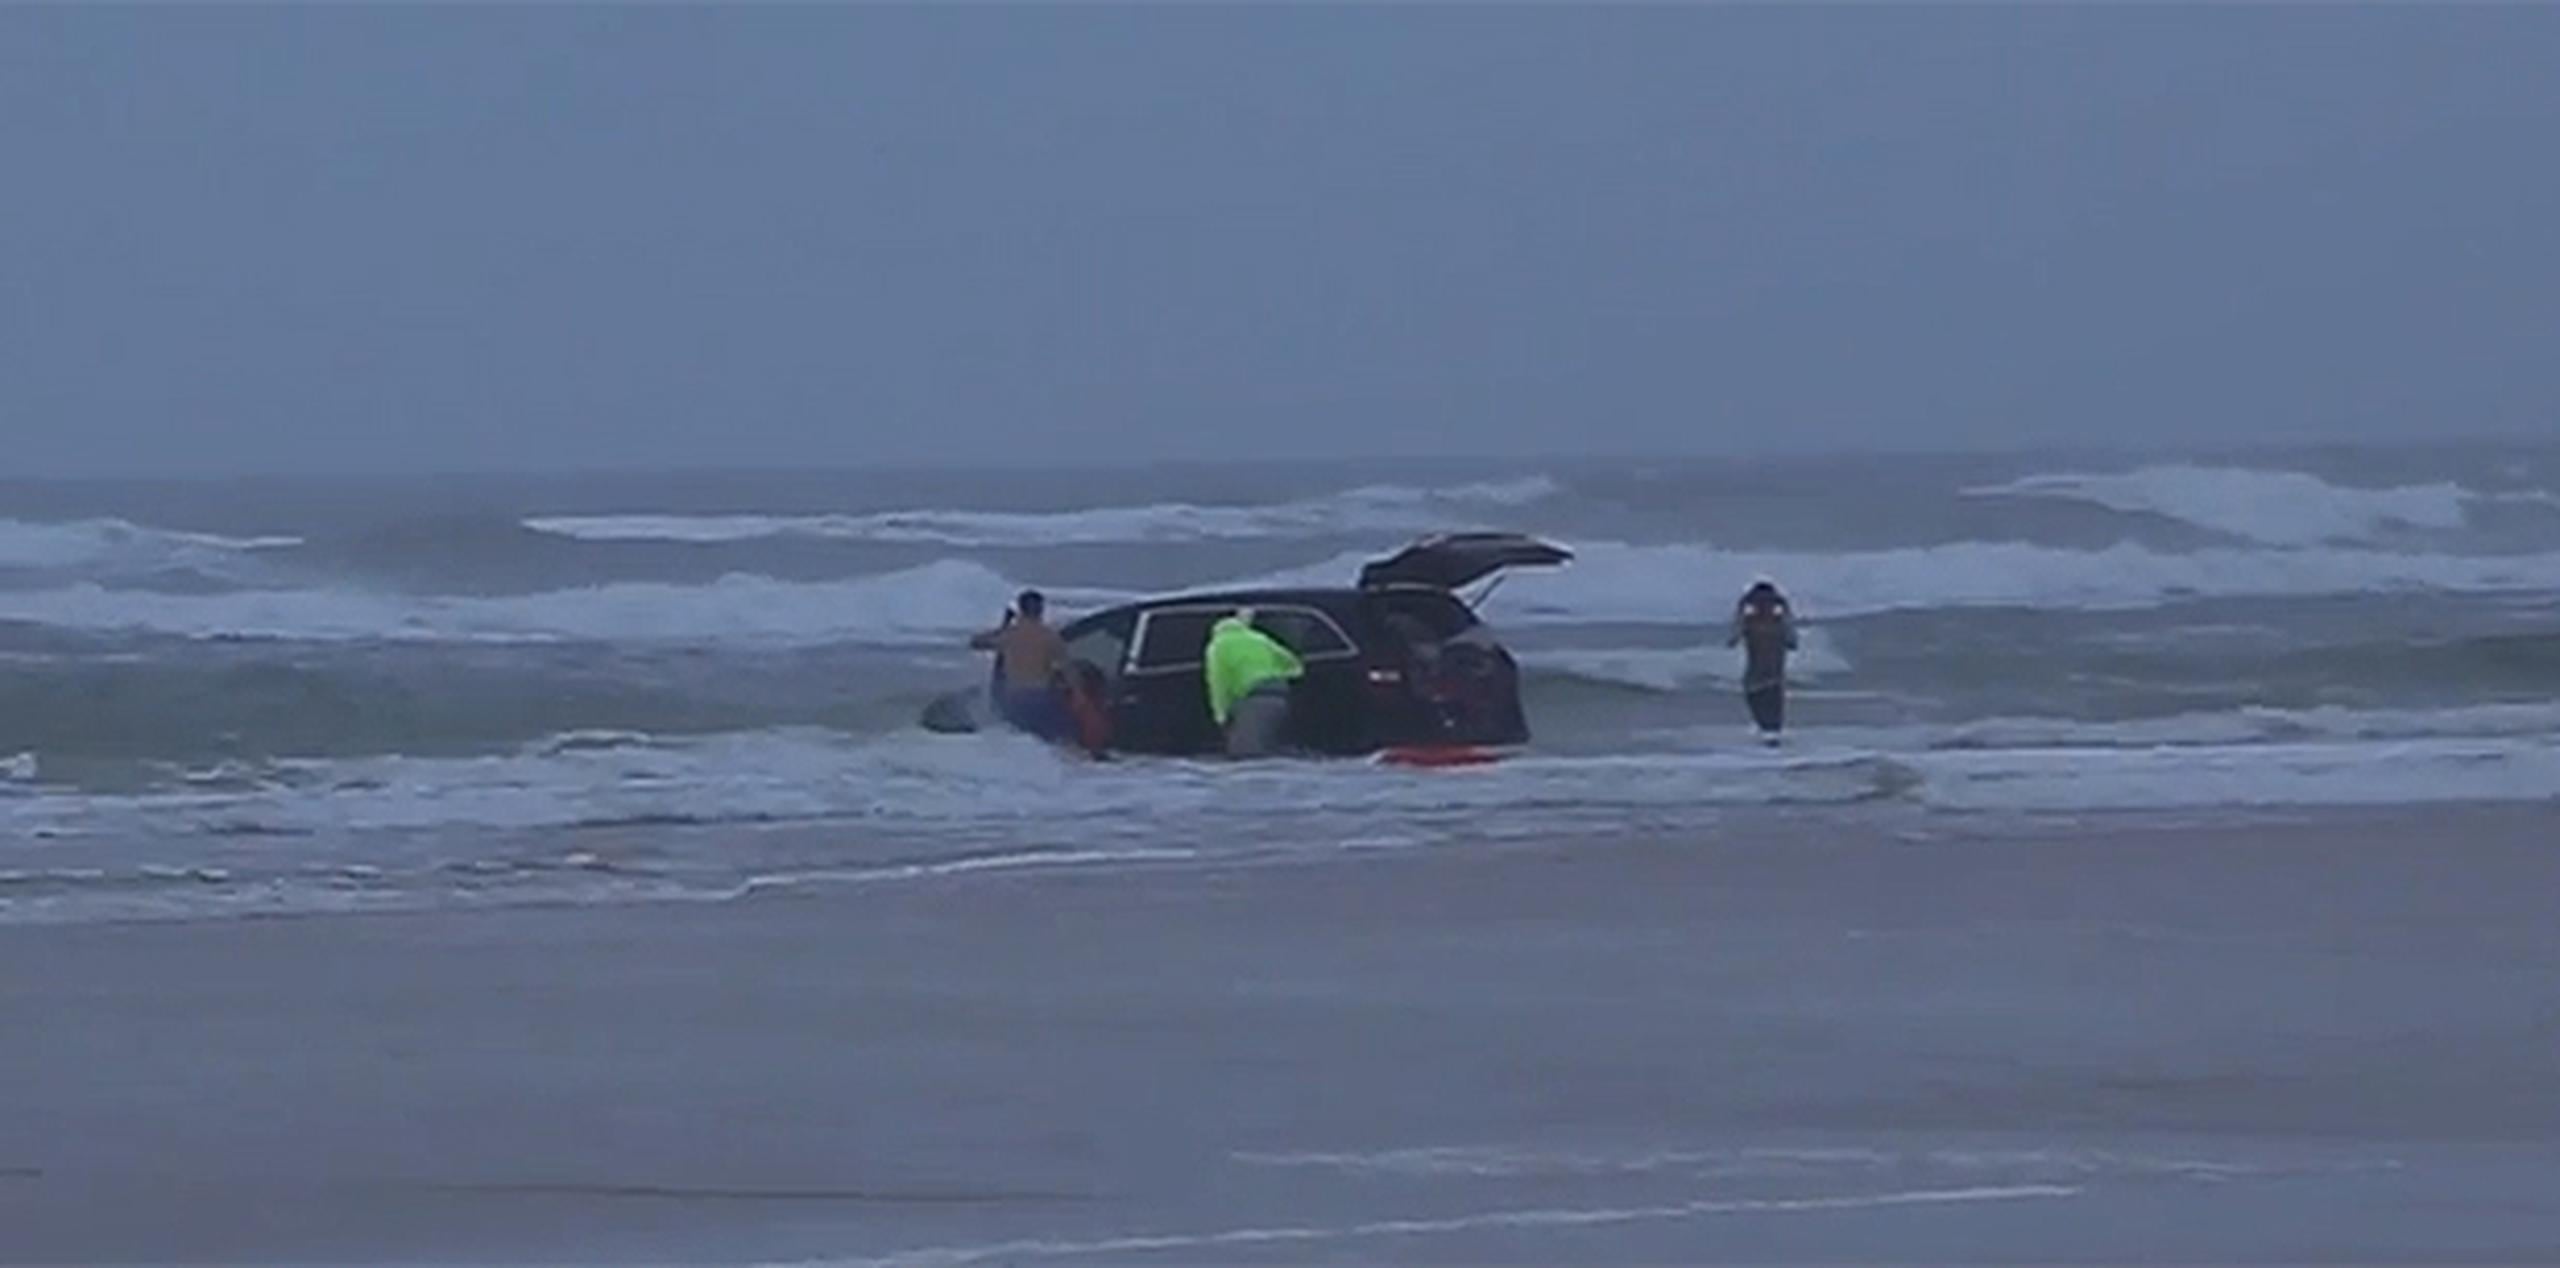 Se aprecia en el vídeo, grabado ayer por la tarde, a un socorrista saliendo del mar con dos niños en sus brazos mientras la parte delantera del vehículo se hunde en el mar. (YT)